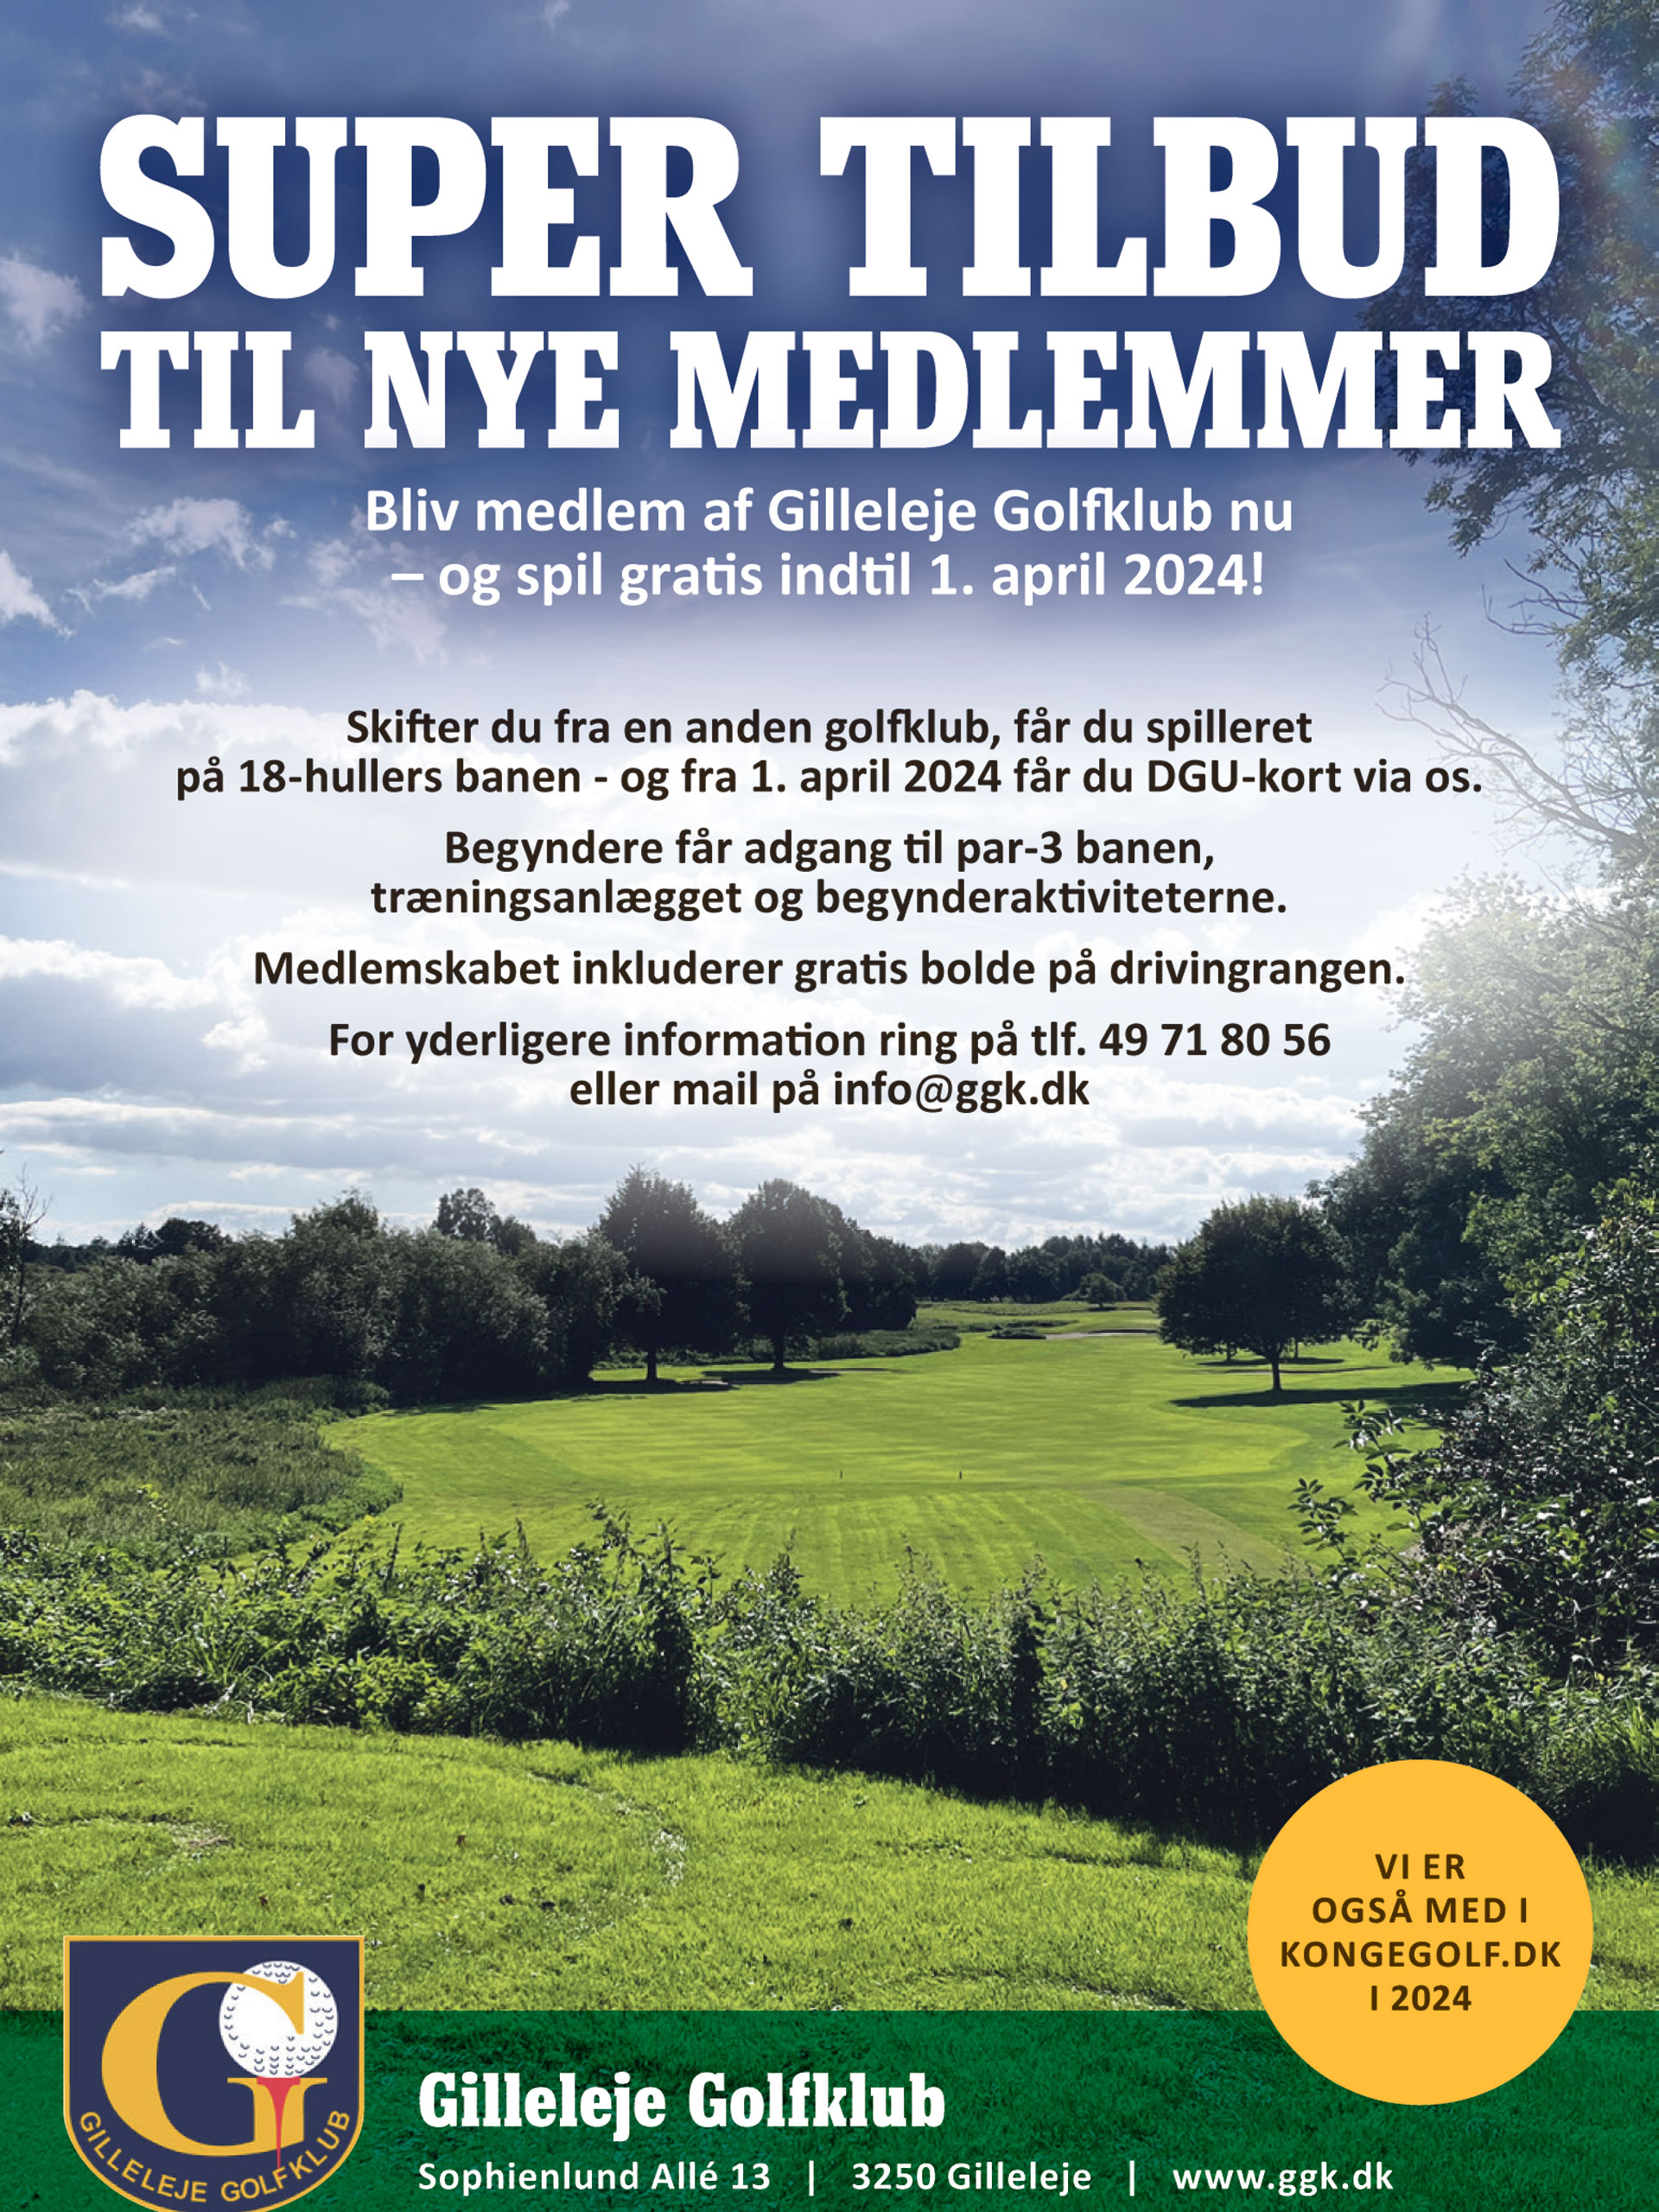 Super tilbud til nye medlemmer i Gilleleje Golfklub 2023